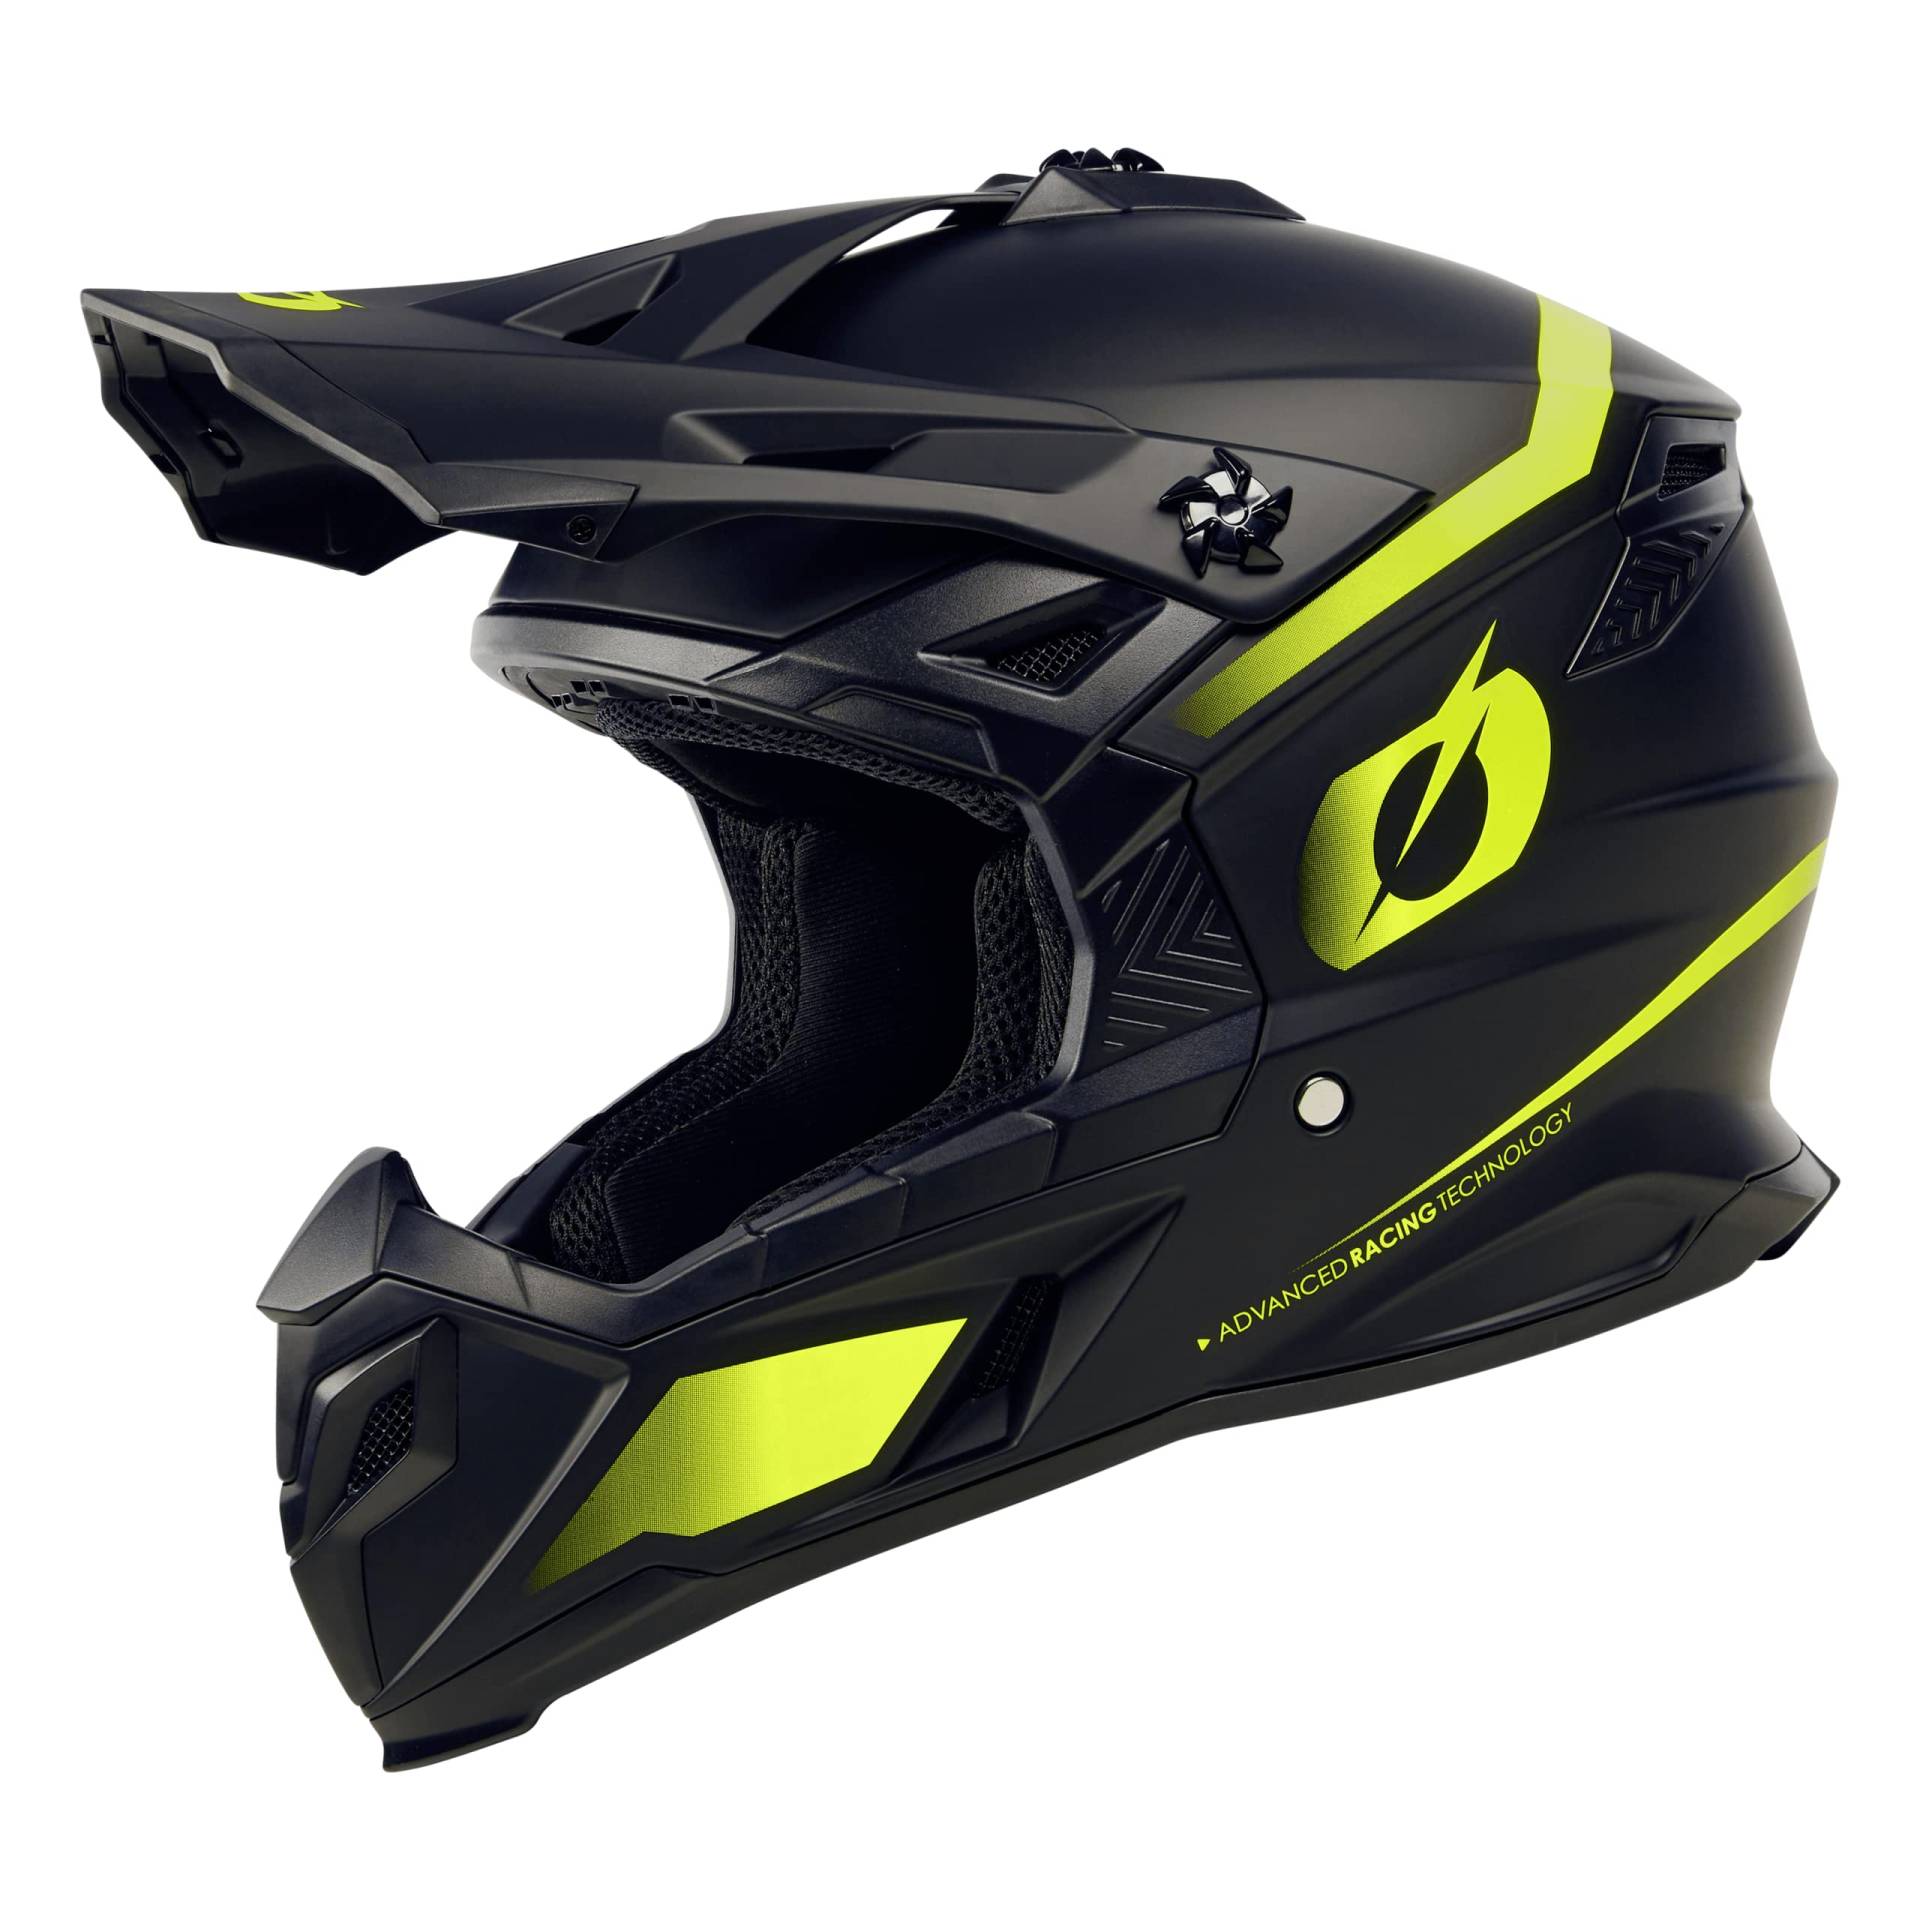 O'NEAL C-SRS Helm I Motocross Helm für Erwachsene I MX Enduro Helm mit ABS-Schale, gepolstertes Innenfutter I Lüftungsöffnungen I Schwarz Neongelb I Größe S von O'NEAL